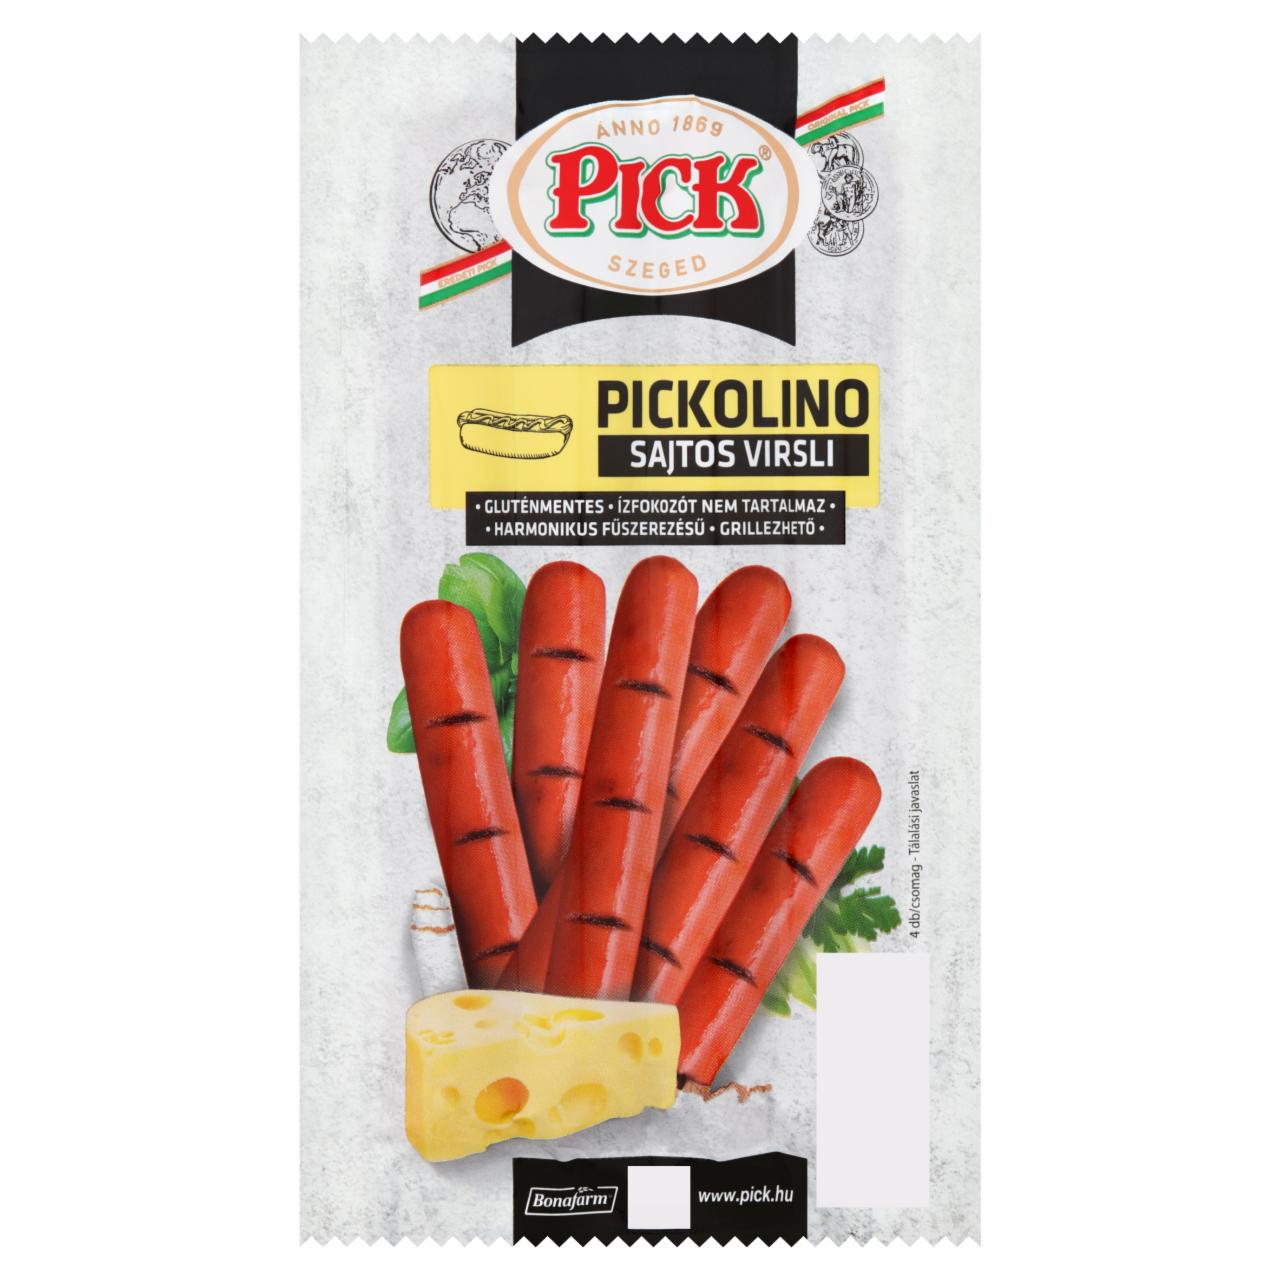 Képek - PICK Pickolino sajtos virsli sertéshúsból 140 g